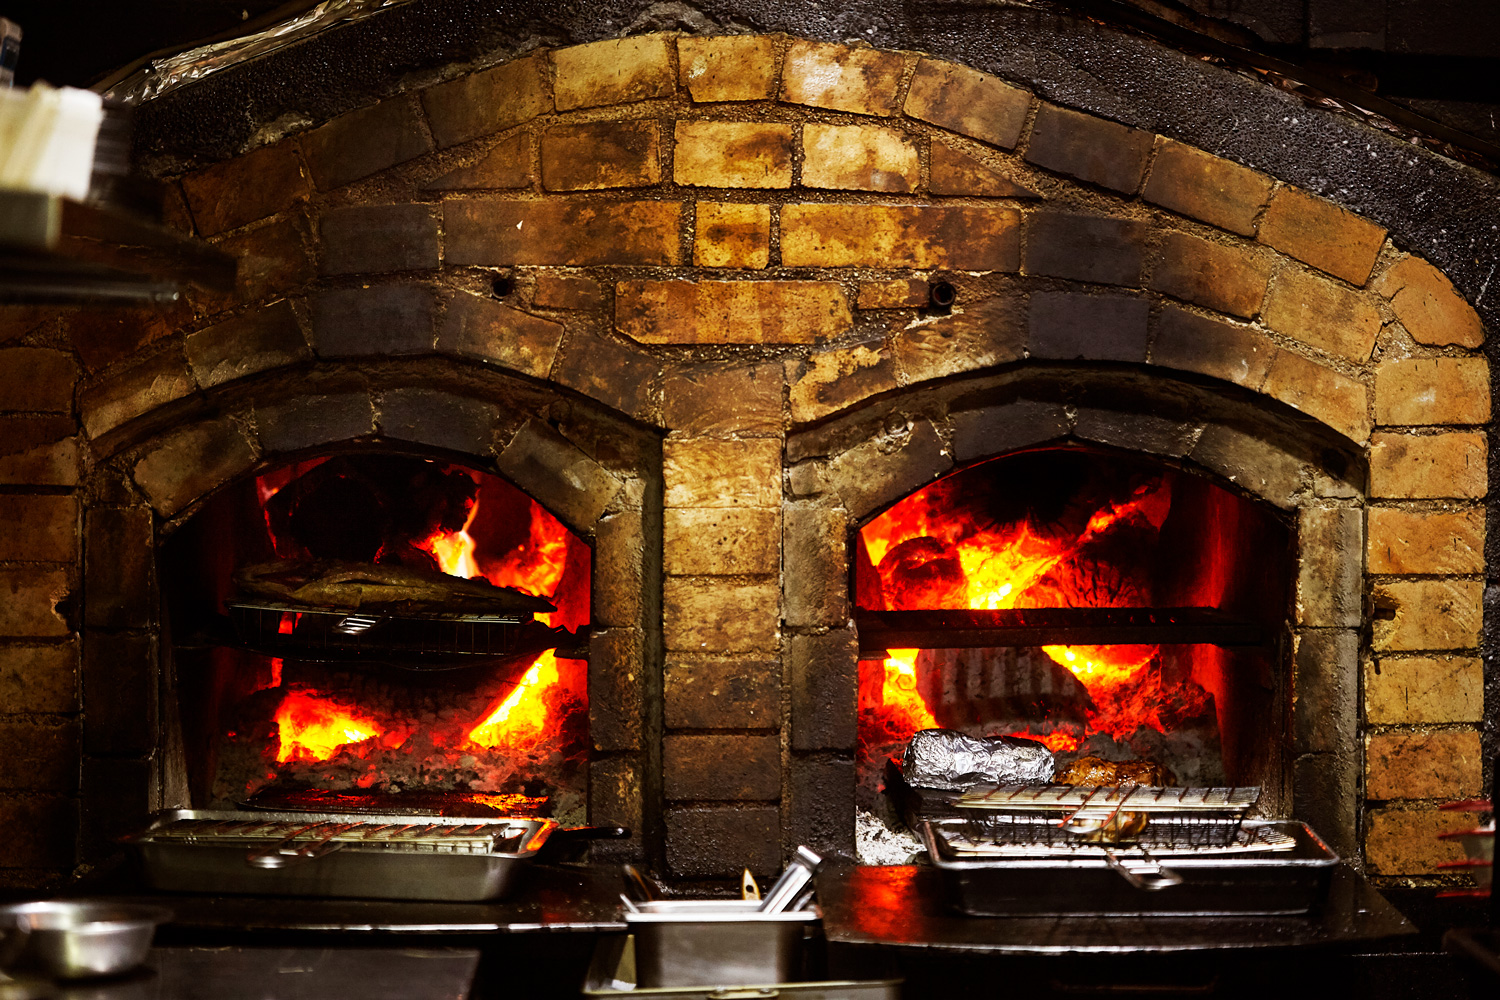 店名AKAME是魯凱族語燒烤之意，料理以火烤為主。餐廳門口兩個大烤爐，是工匠老爸為他砌的。（攝影：王文廷）